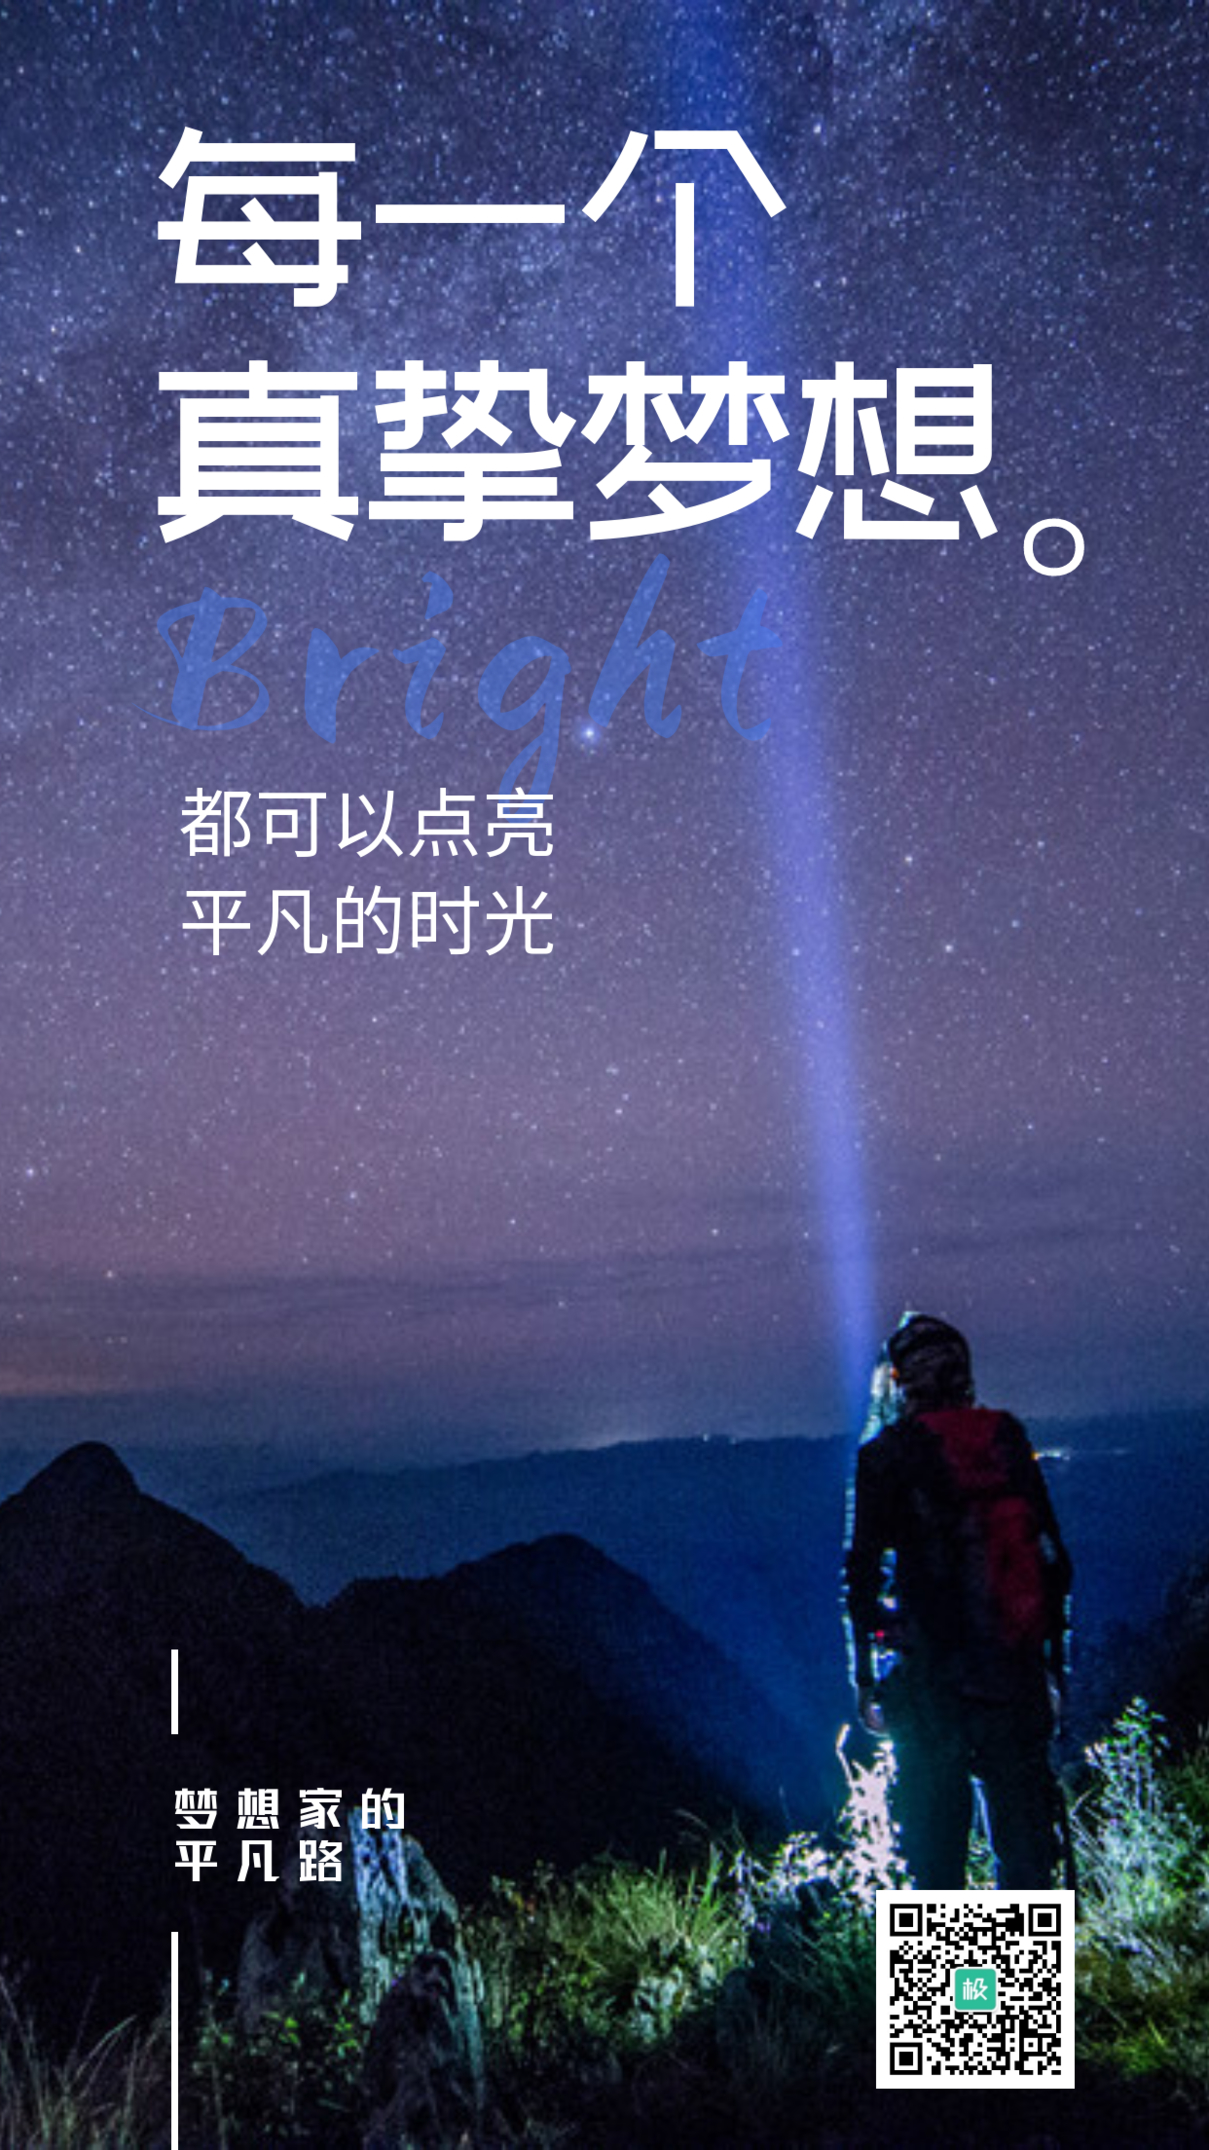 梦想夜空星河励志大气摄影图海报